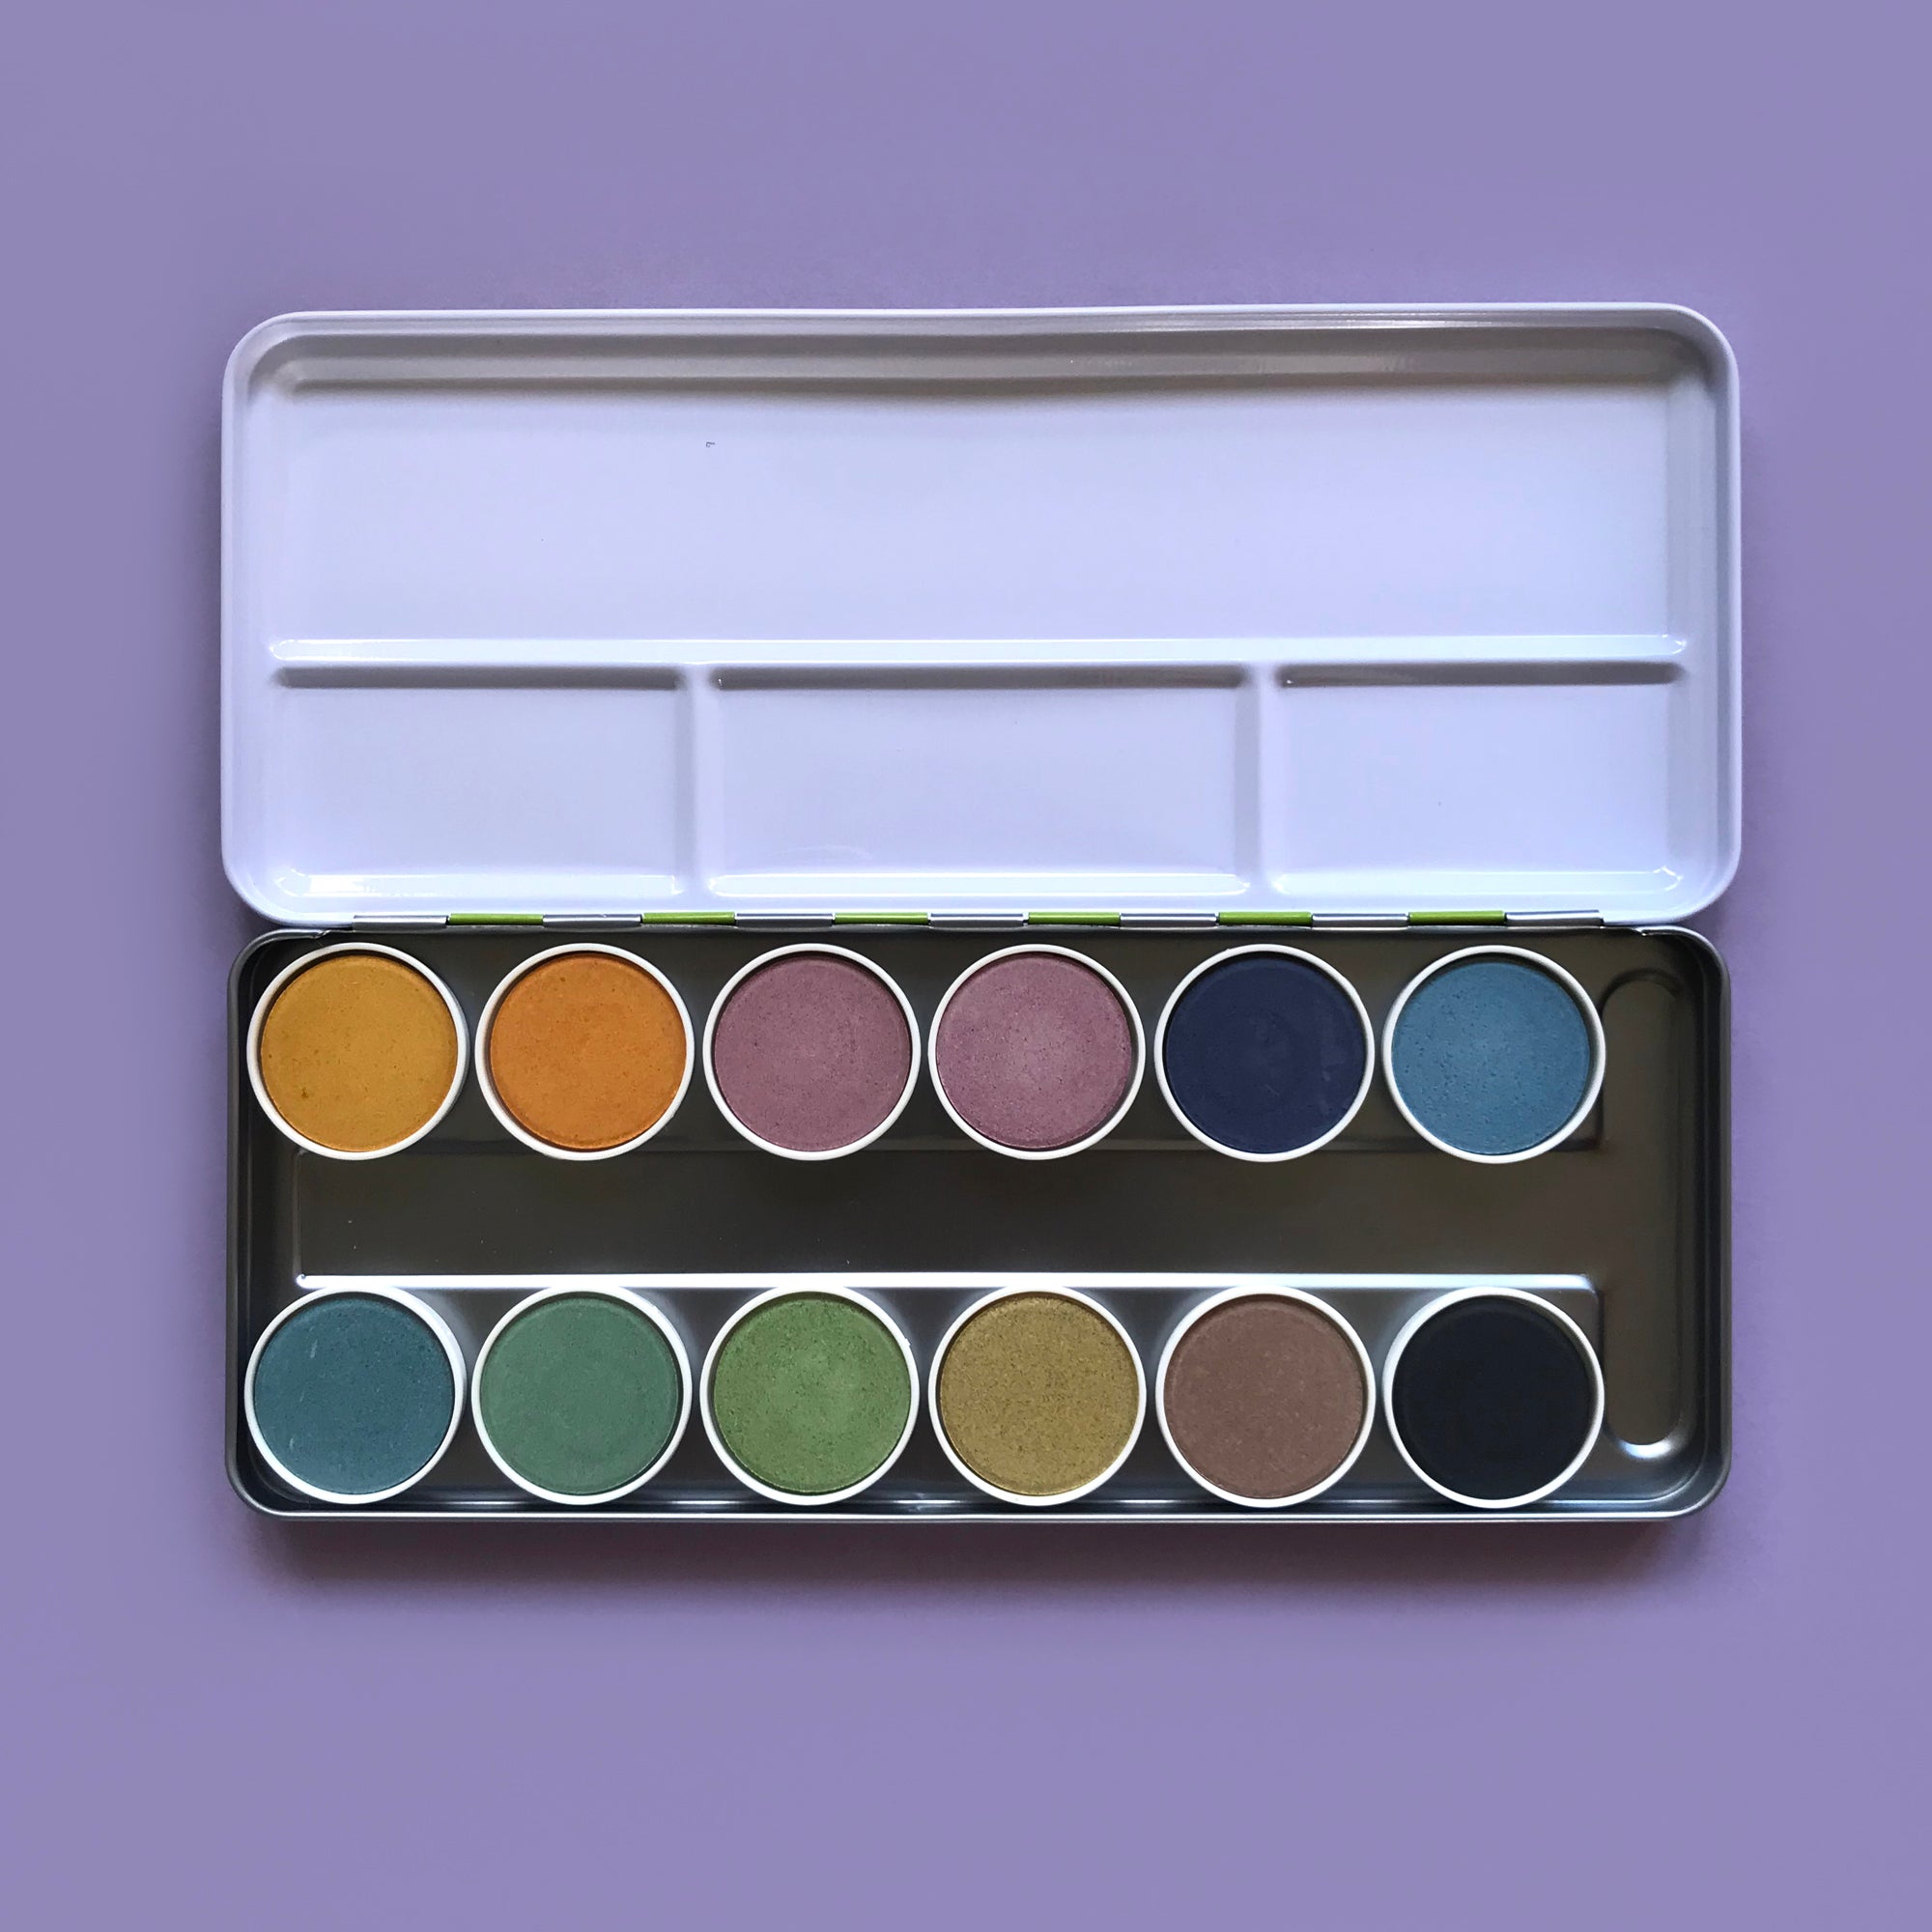 Paint box of 12 colours